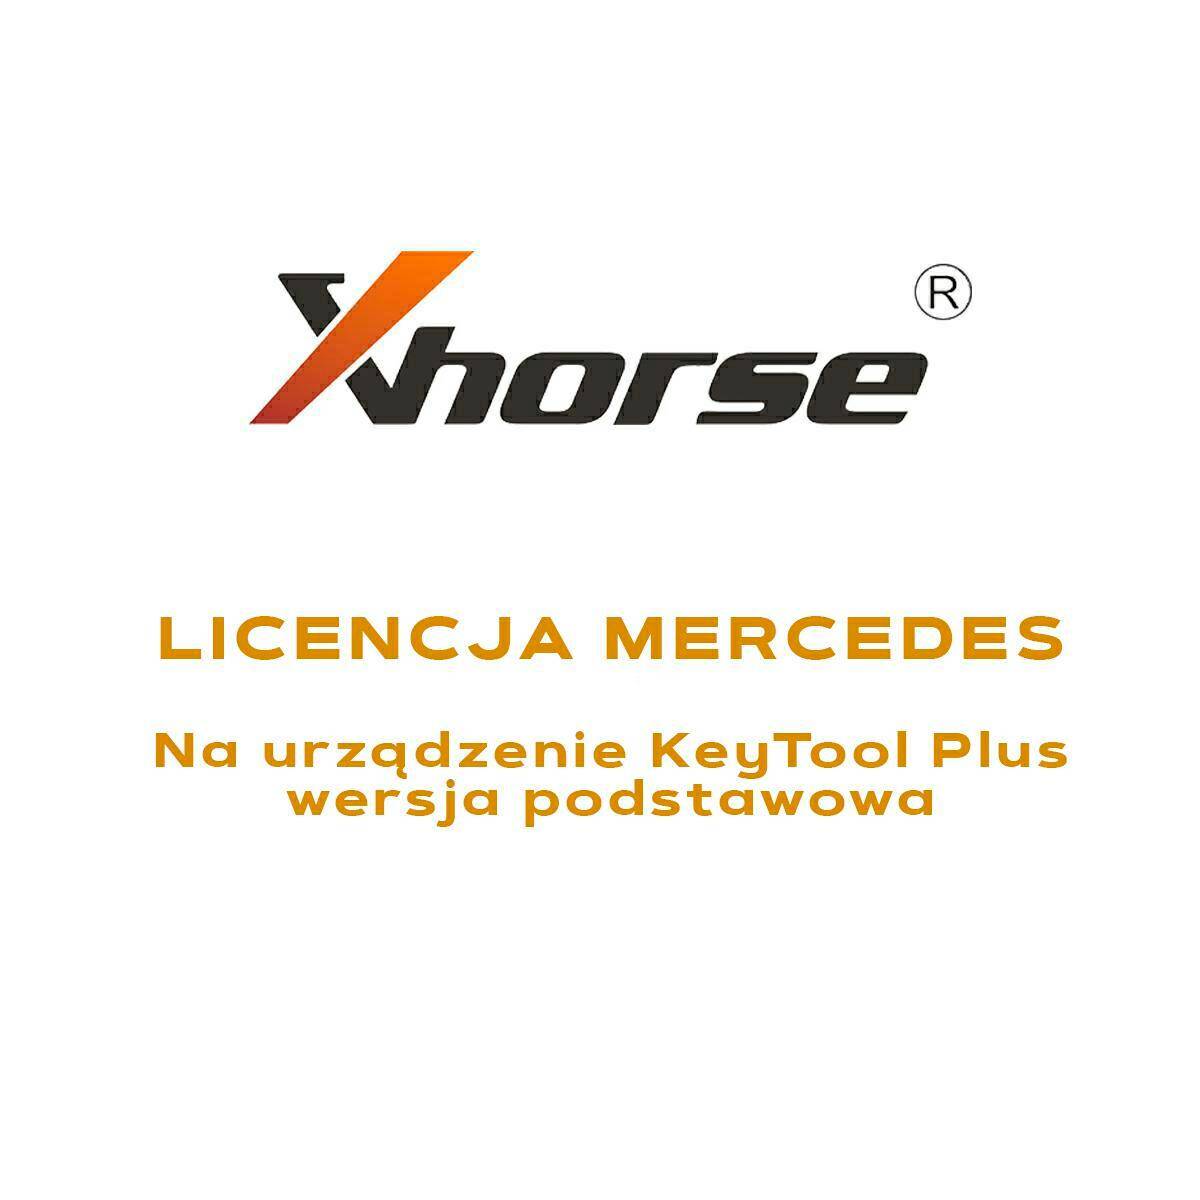 Key Tool Mercedes xHorse Lizenz